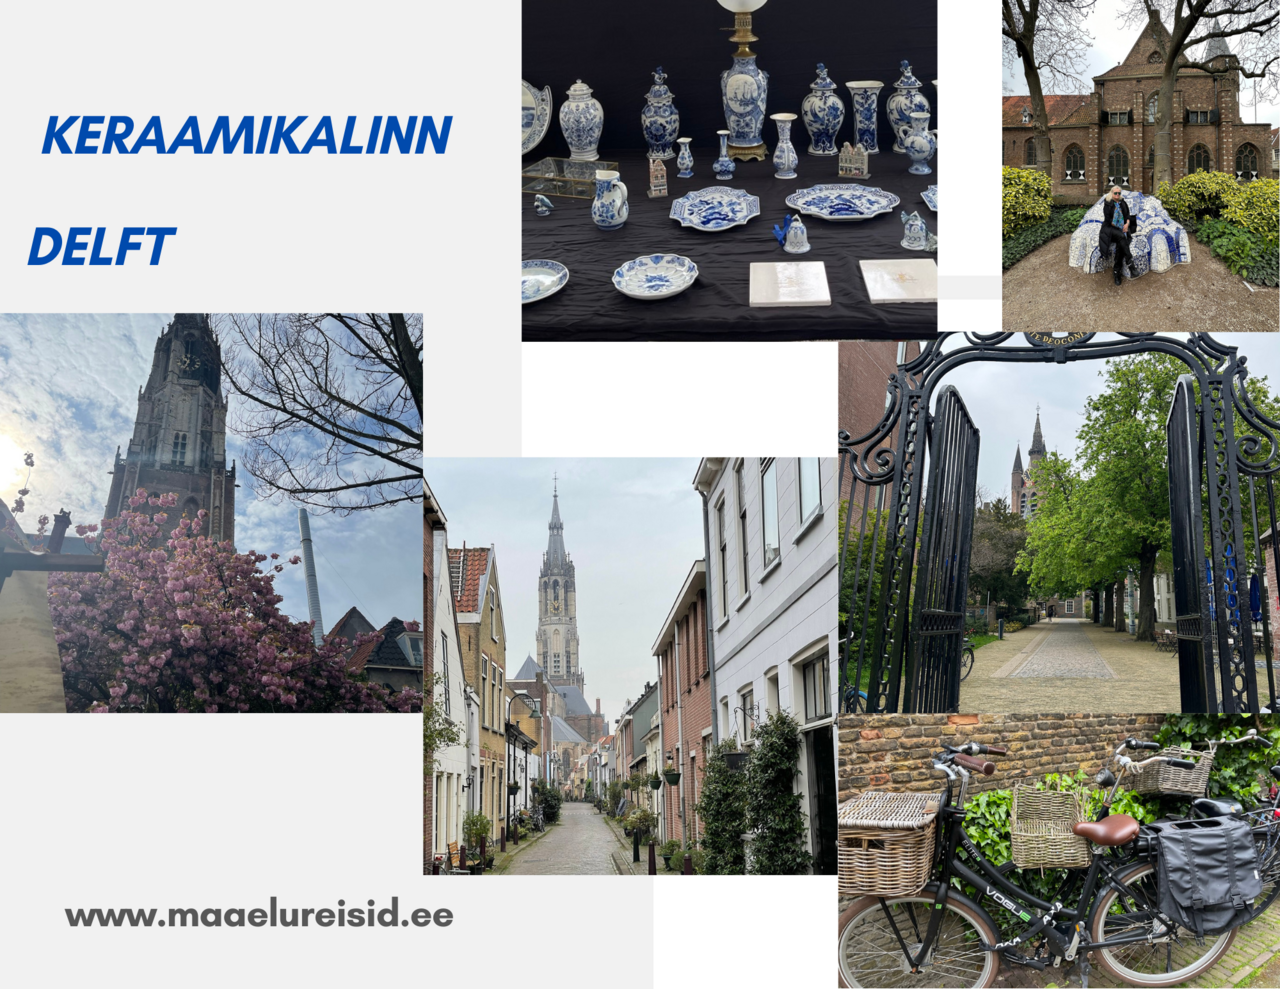 keraamikalinn Delft - Hollandit avastama viib Maaelureisid